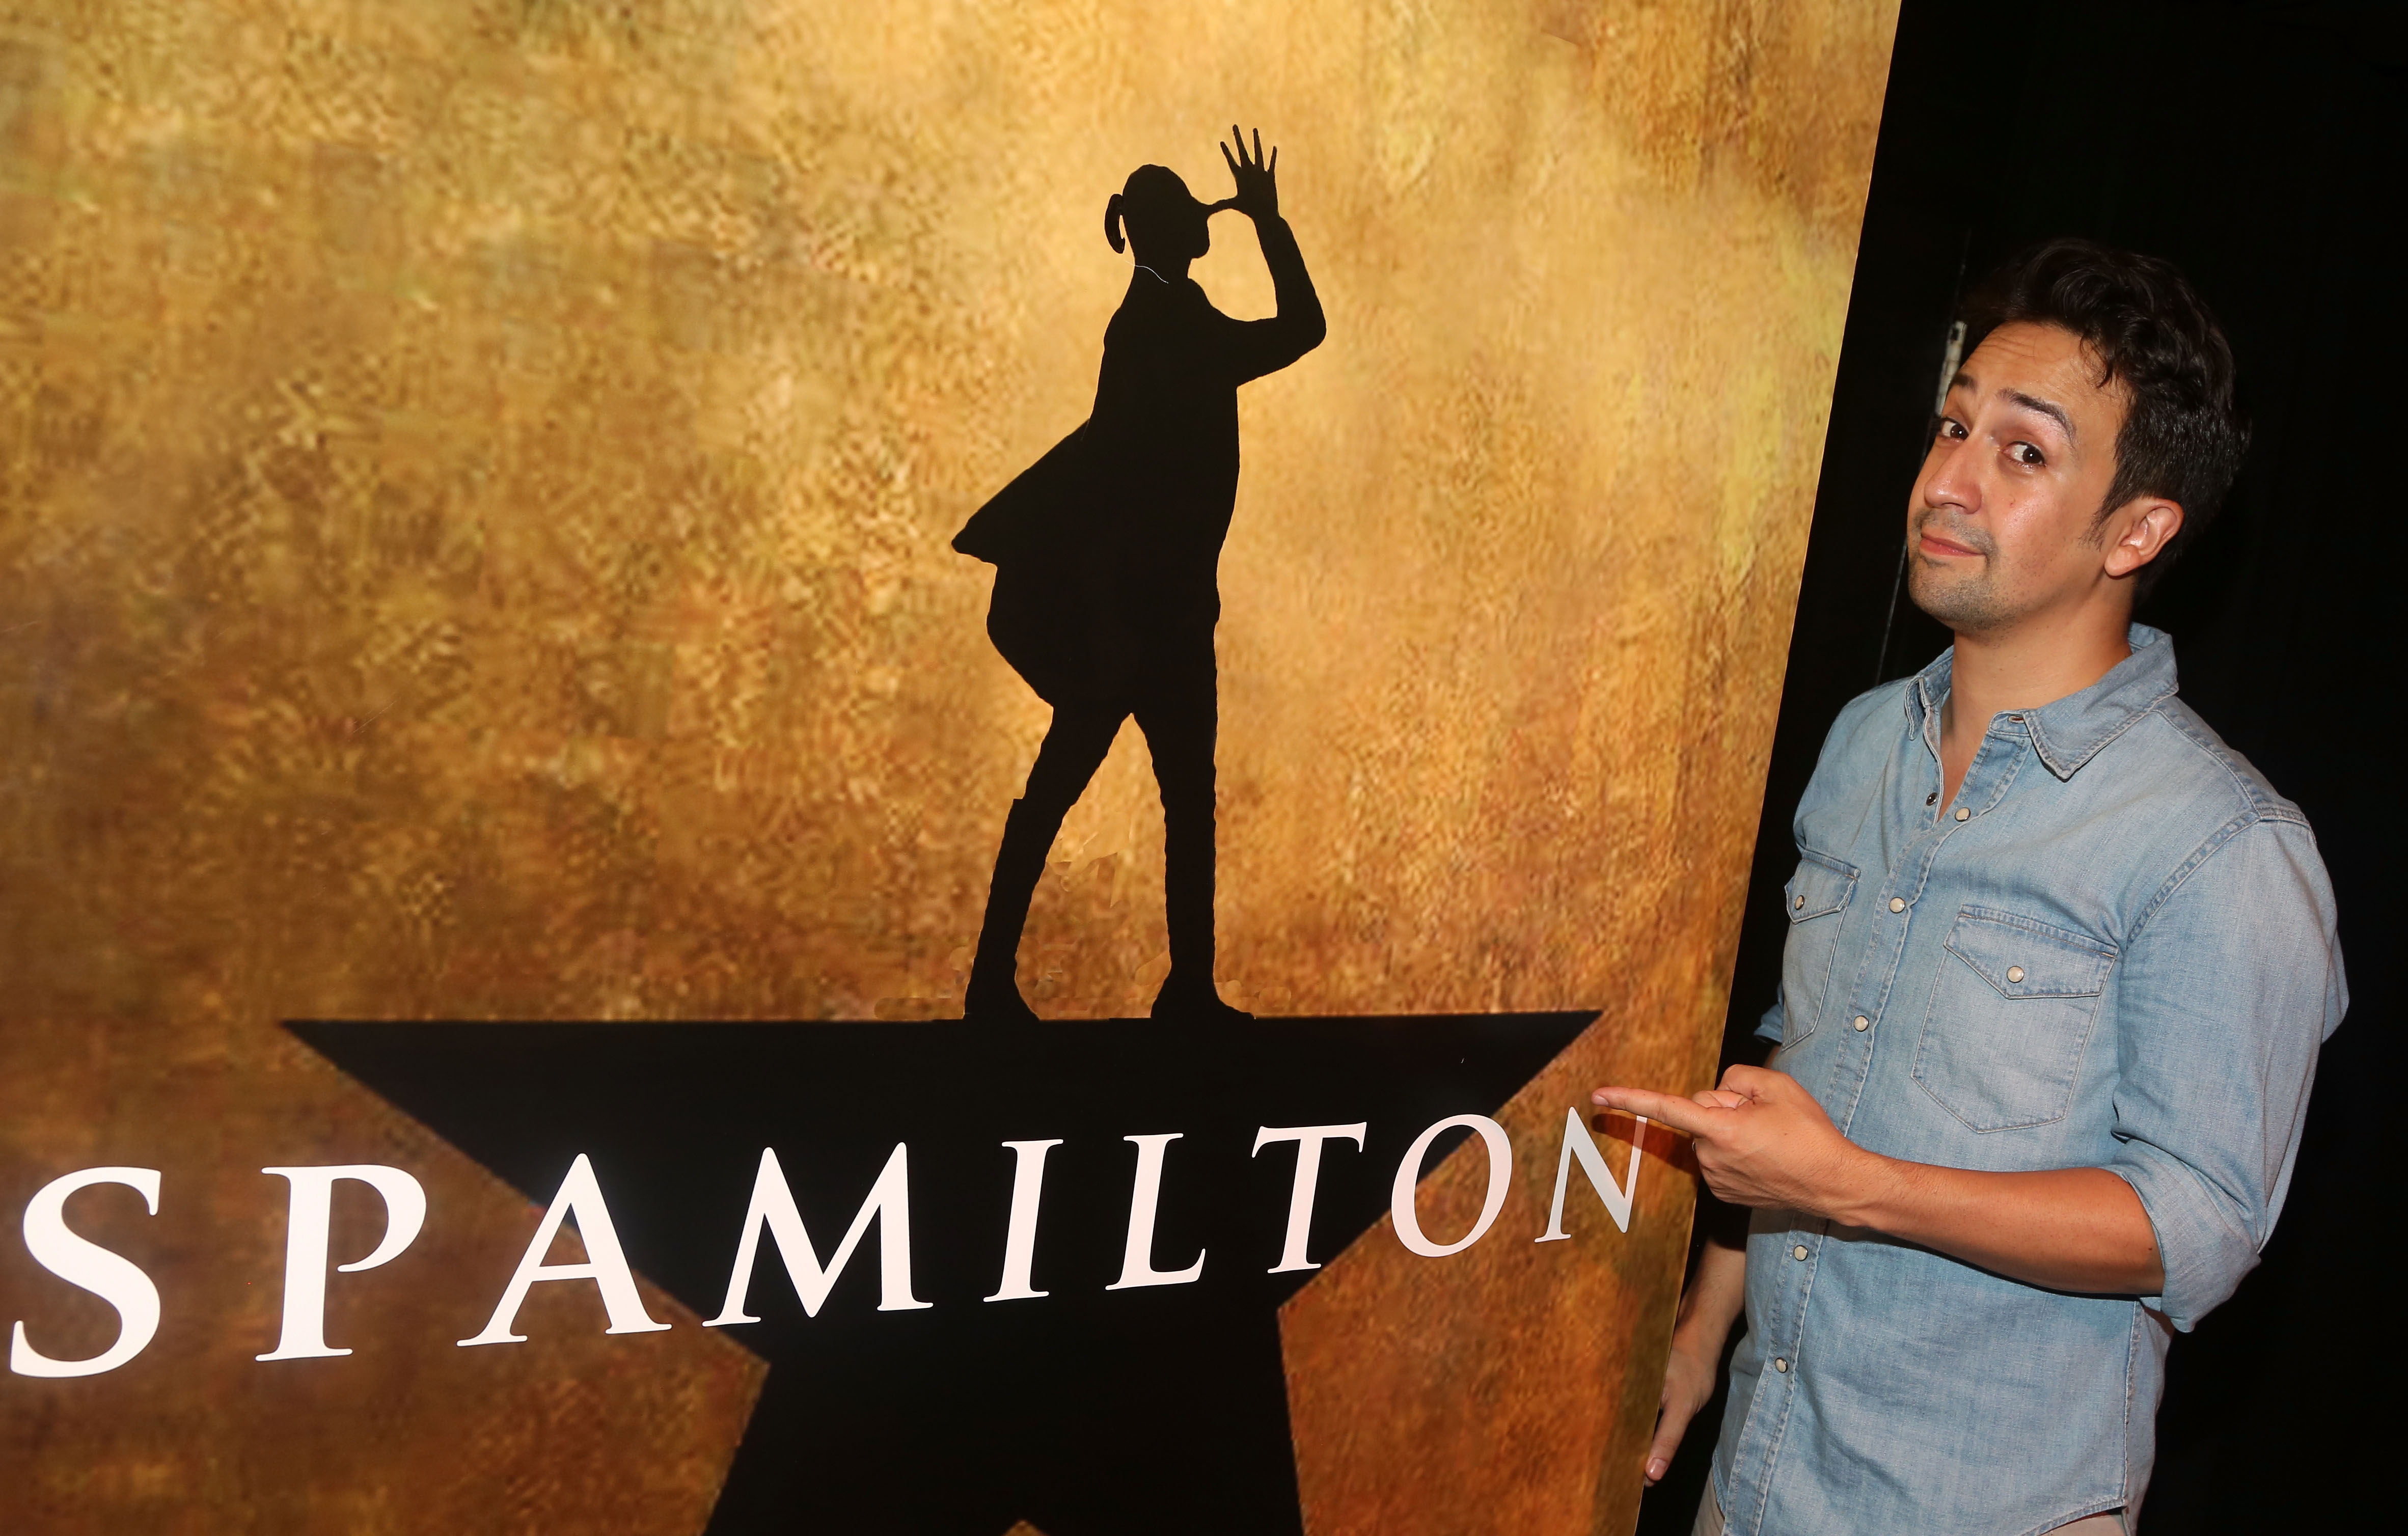 Lin-Manuel Miranda poses at the parody of "Hamilton" called Spamilton.